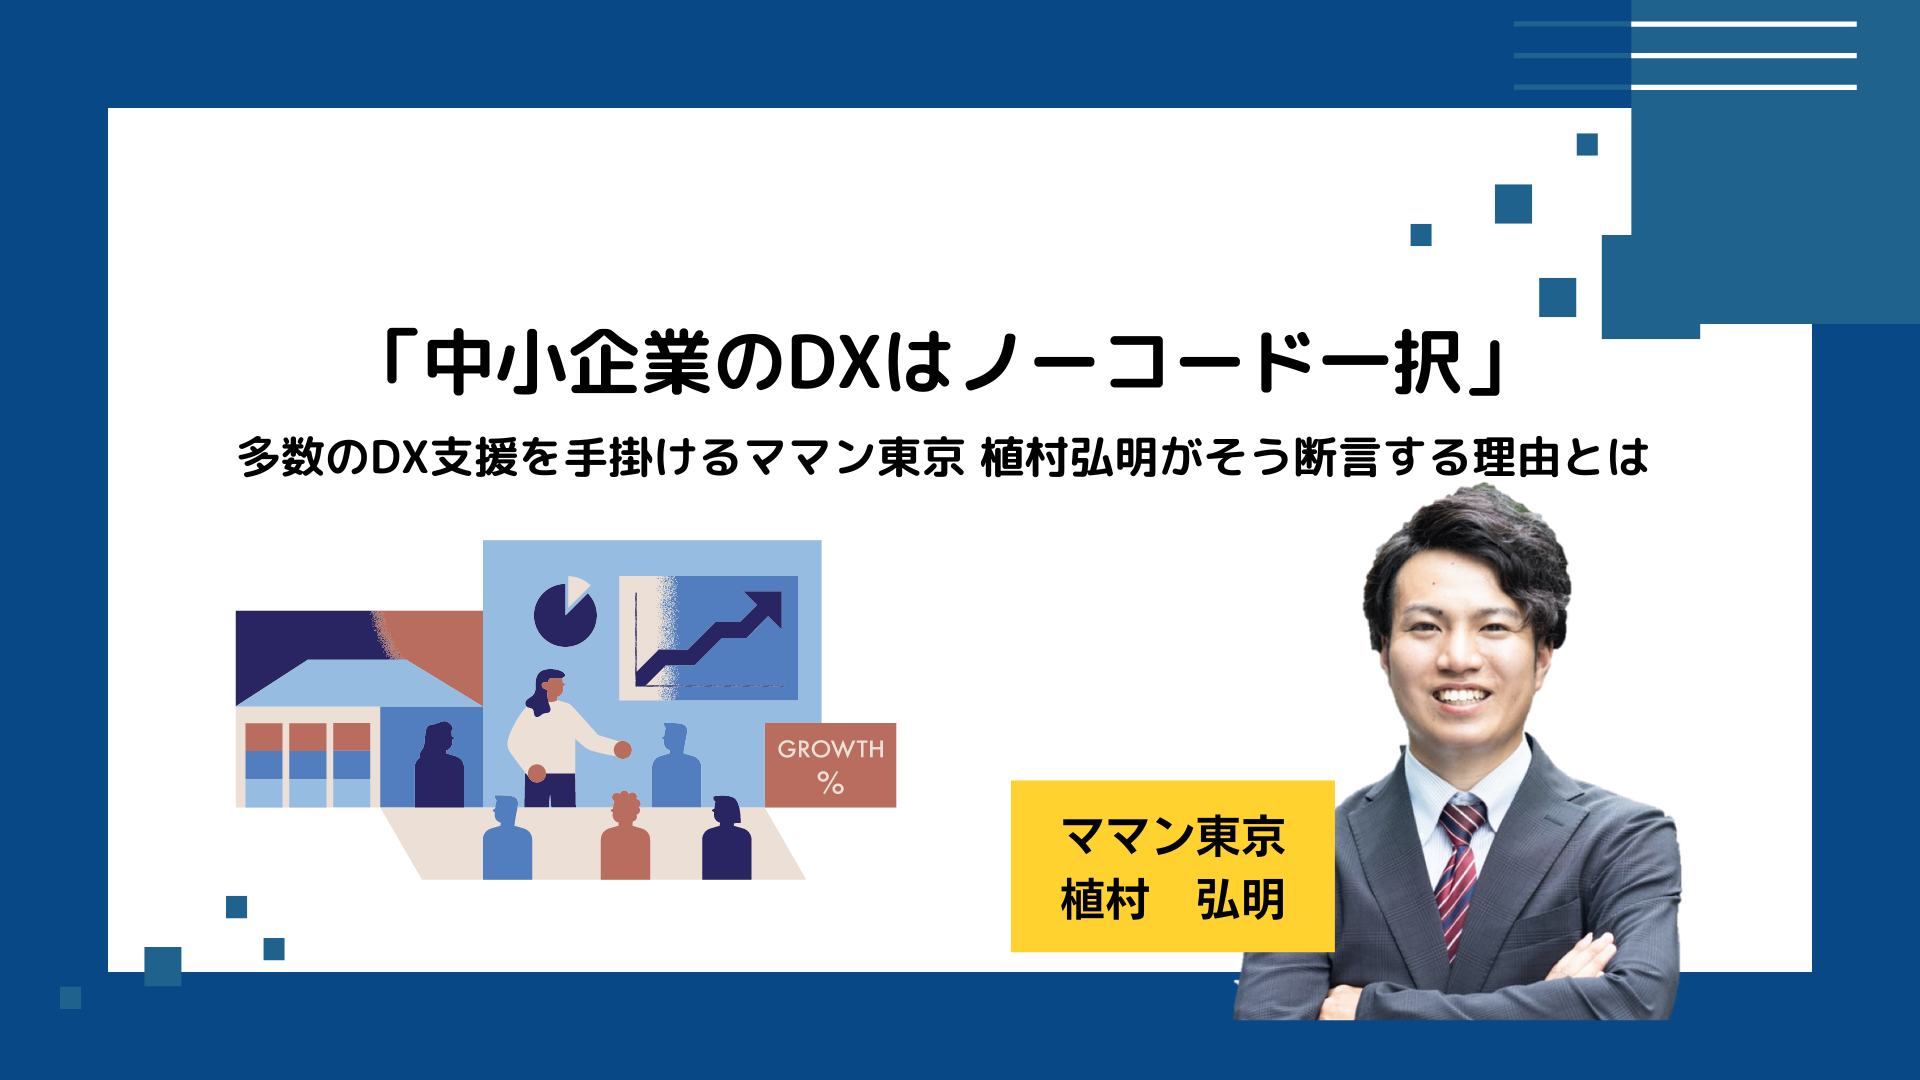 「中小企業のDXはノーコード一択」多数のDX支援を手掛けるママン東京 植村弘明がそう断言する理由とは